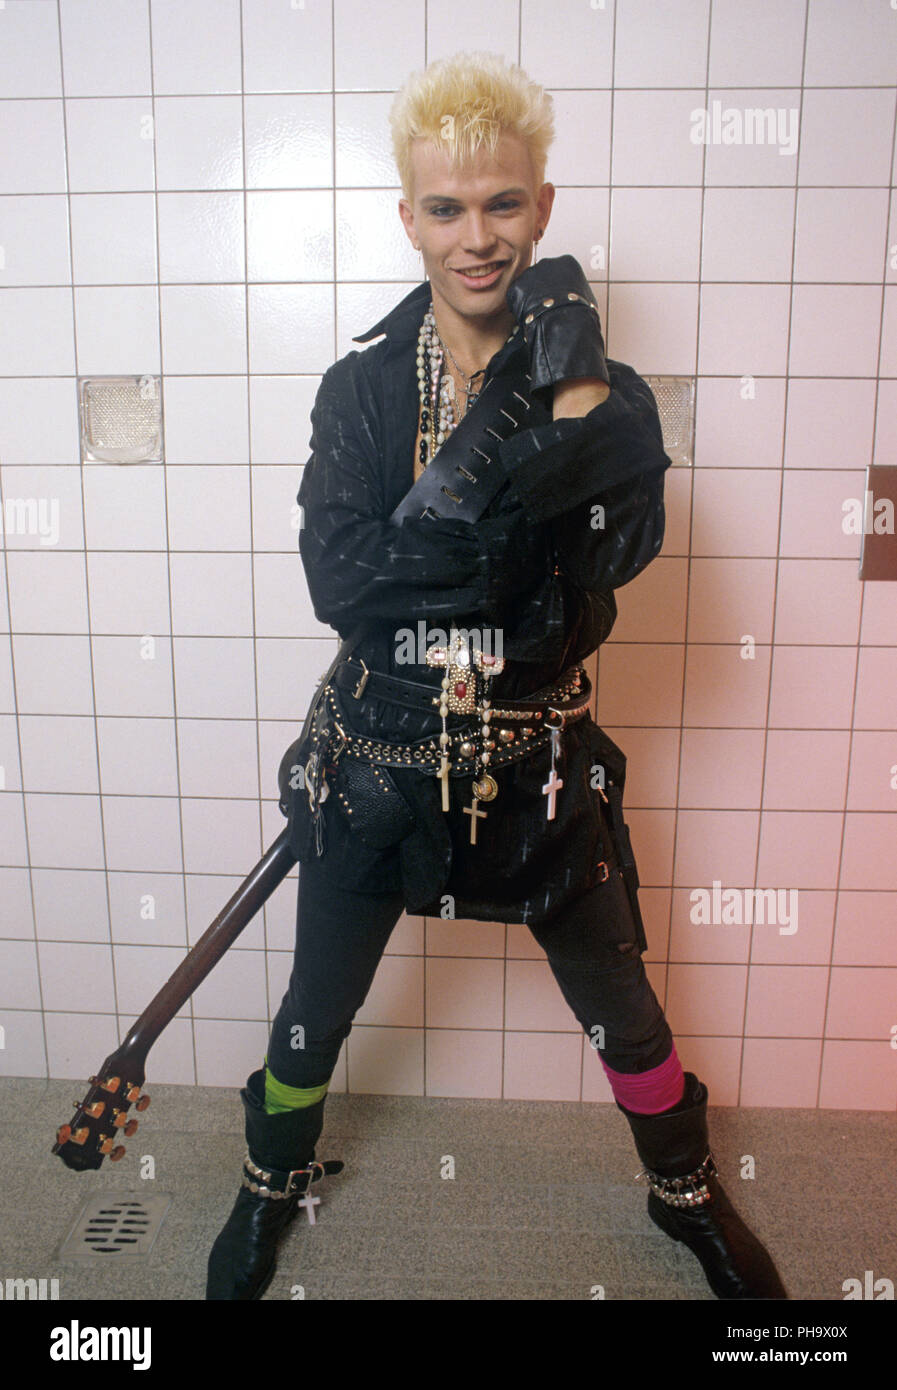 Billy Idol on 01.11.1984 in Dortmund. | usage worldwide Stock Photo - Alamy